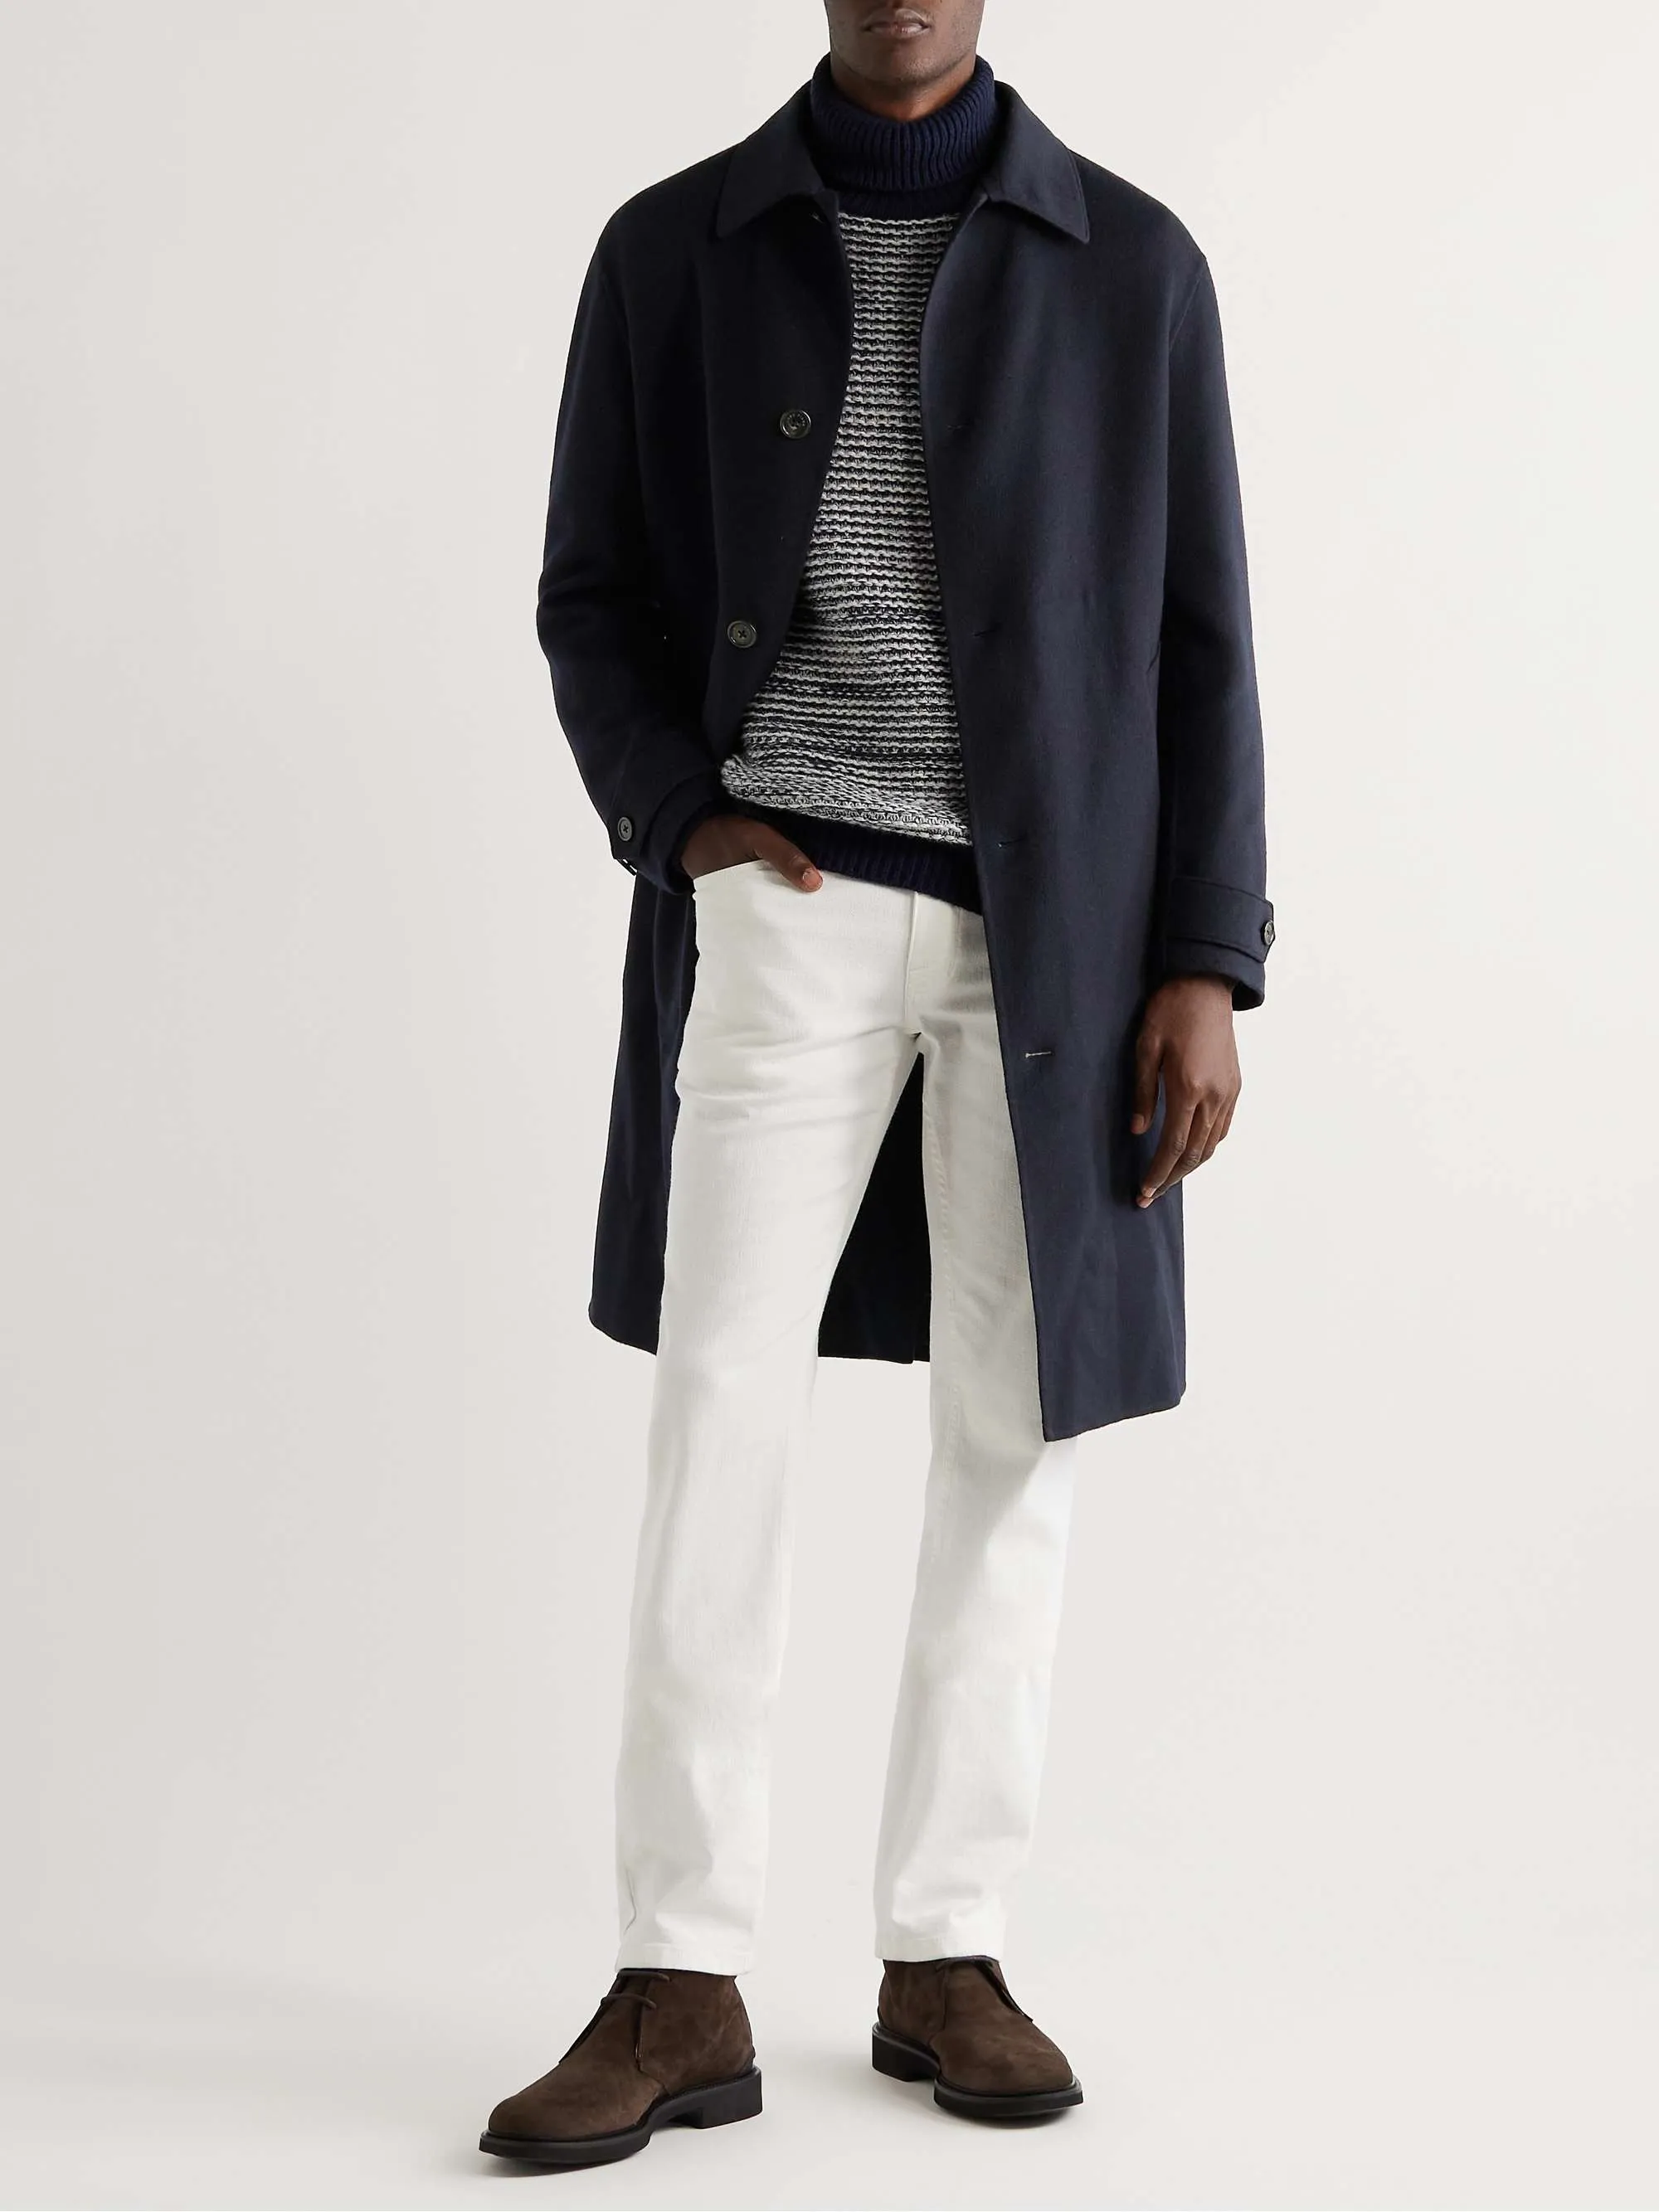 Projektant Mens Wool Blends Fashion Długie płaszcze Mężczyźni jesienne odzież wierzchnia loro piana plus kaszmirowy płaszcz kaszmiru